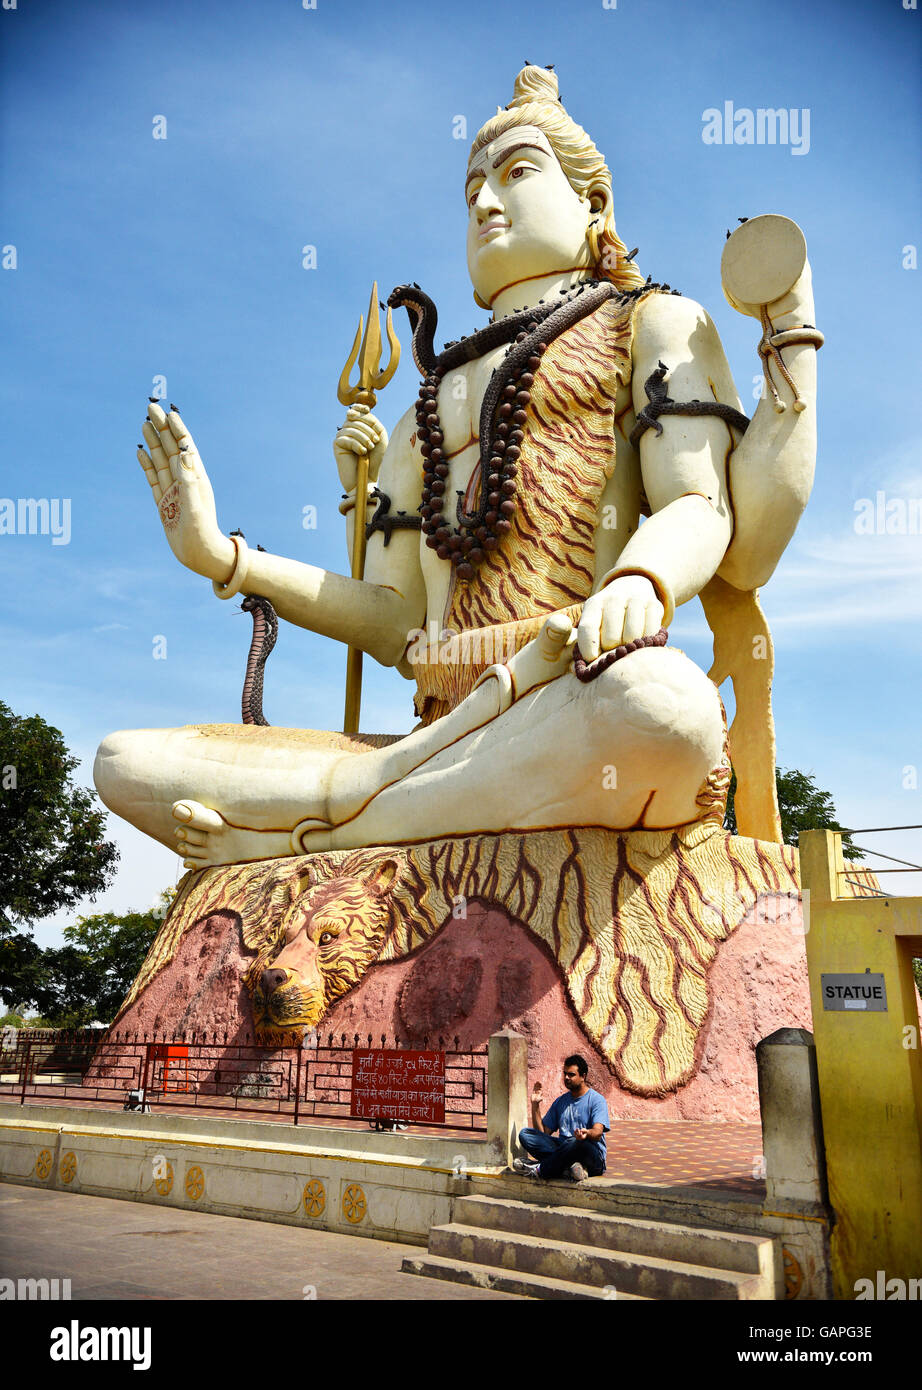 Un homme assis en bas de l'immense statue du dieu Shiva qui bénit bienvenue à tous les pèlerins visitant Nageshwar temple dans le Gujarat. Banque D'Images